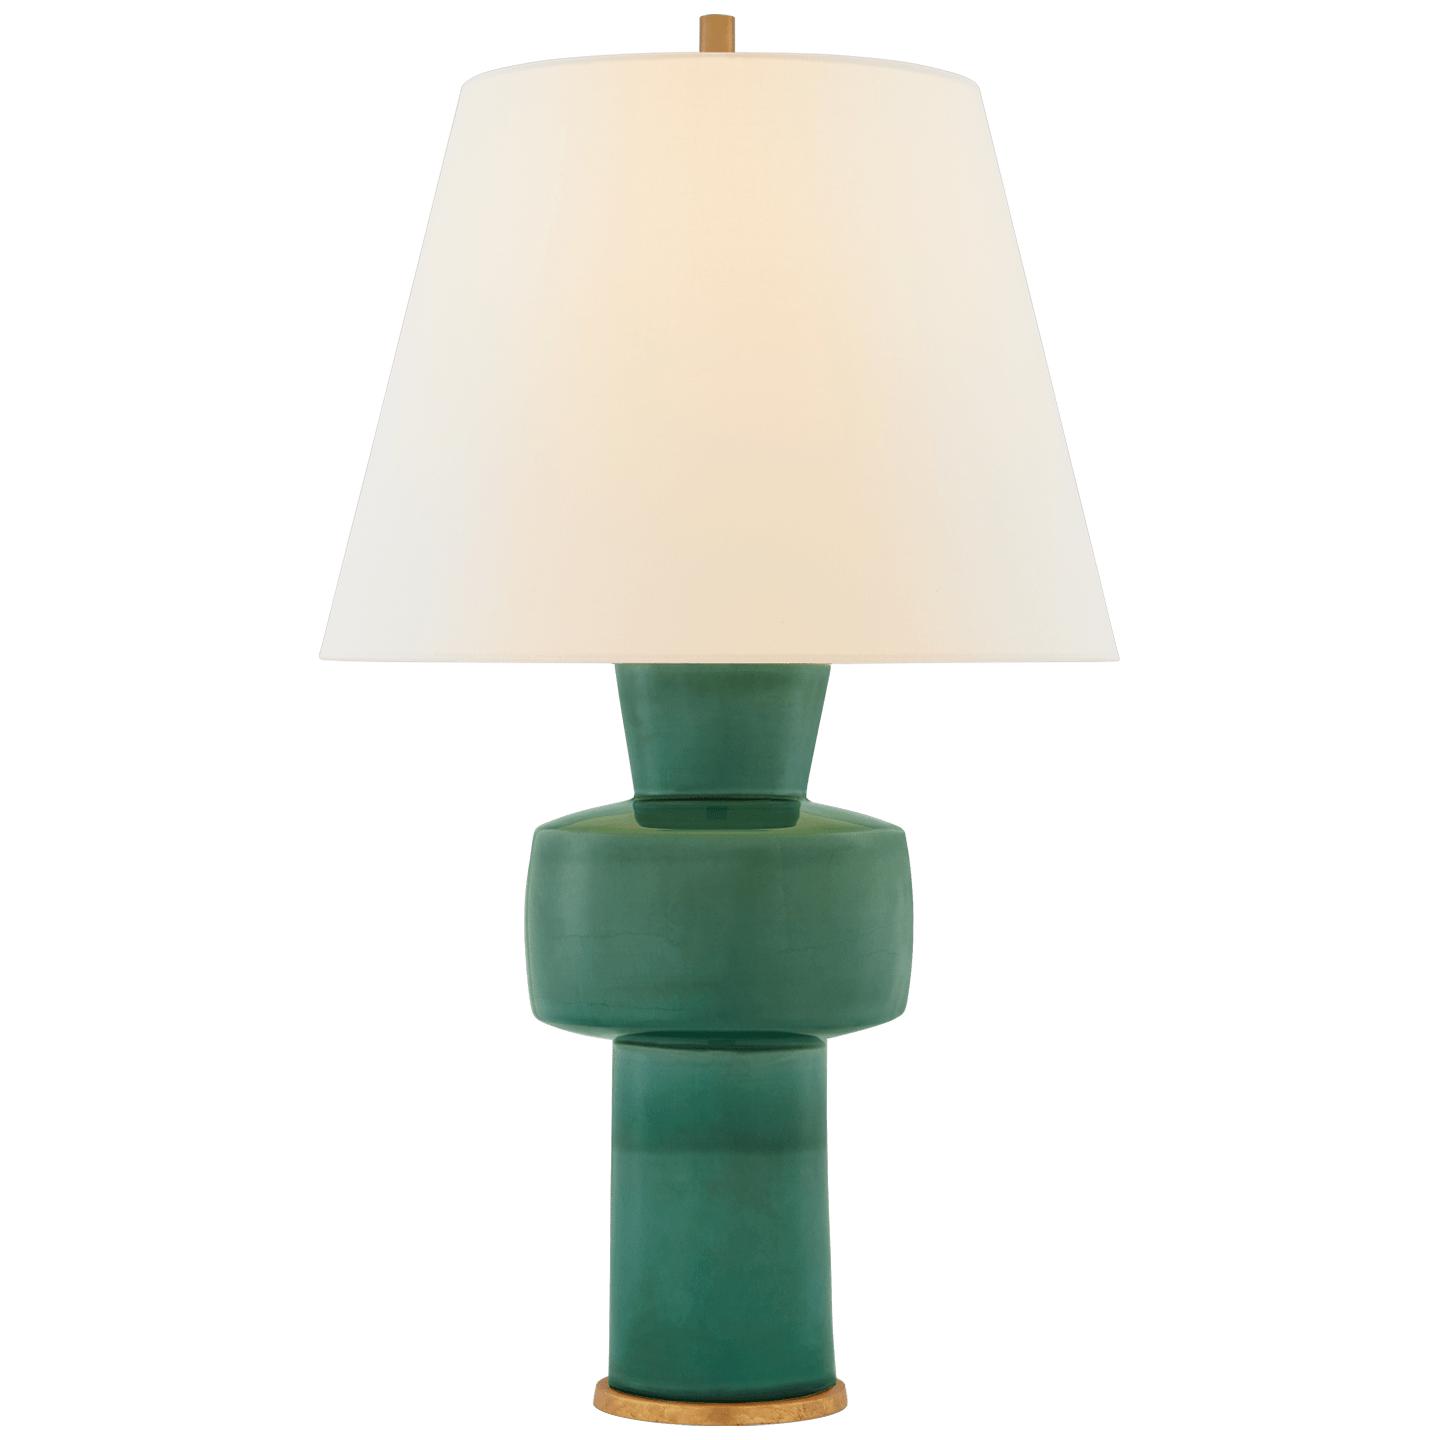 Купить Настольная лампа Eerdmans Medium Table Lamp в интернет-магазине roooms.ru